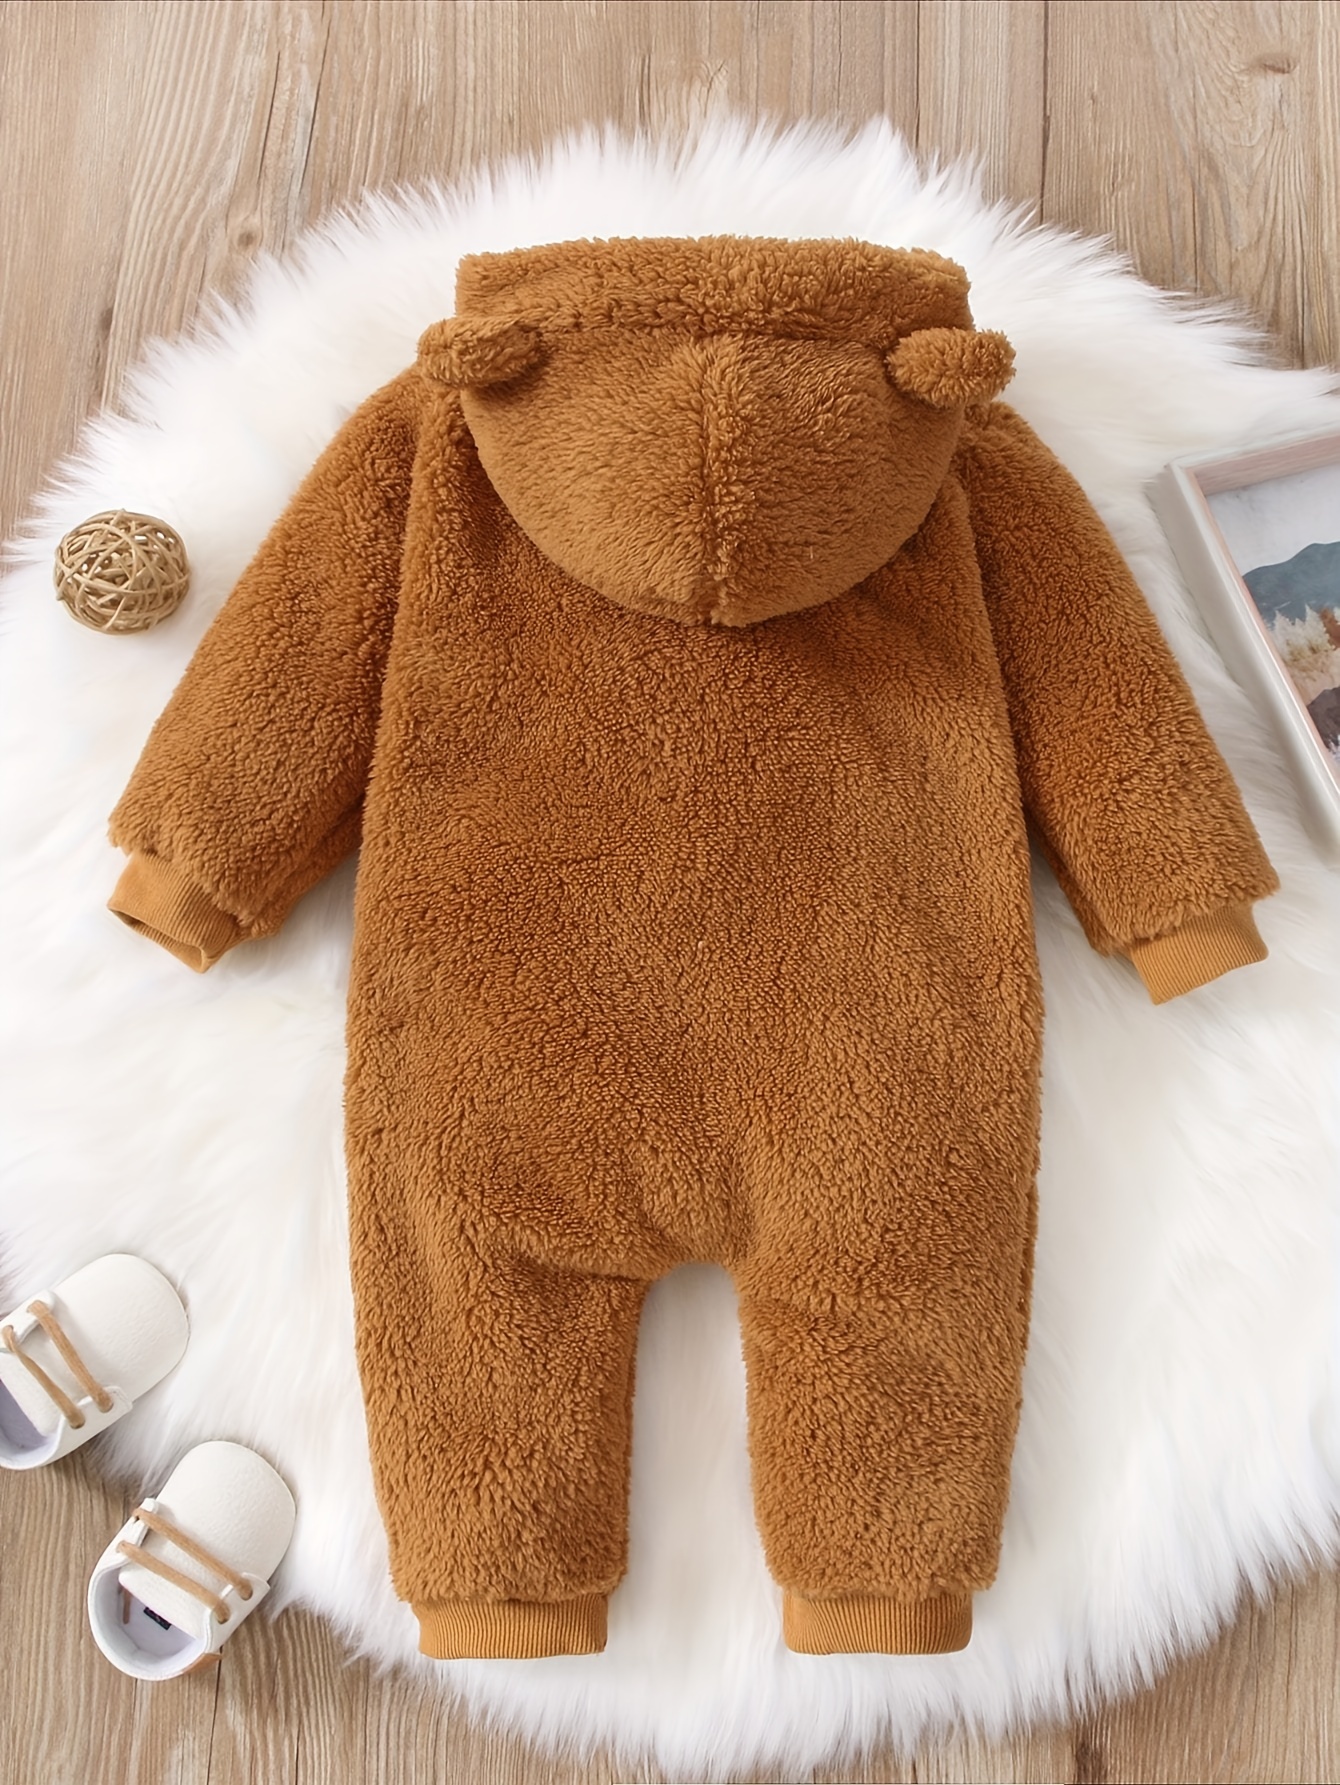 Newborn Baby Warm & Cute Bear Shape Hooded Jumpsuit Zip Up Onesie Romper  Fall Winter Outwear